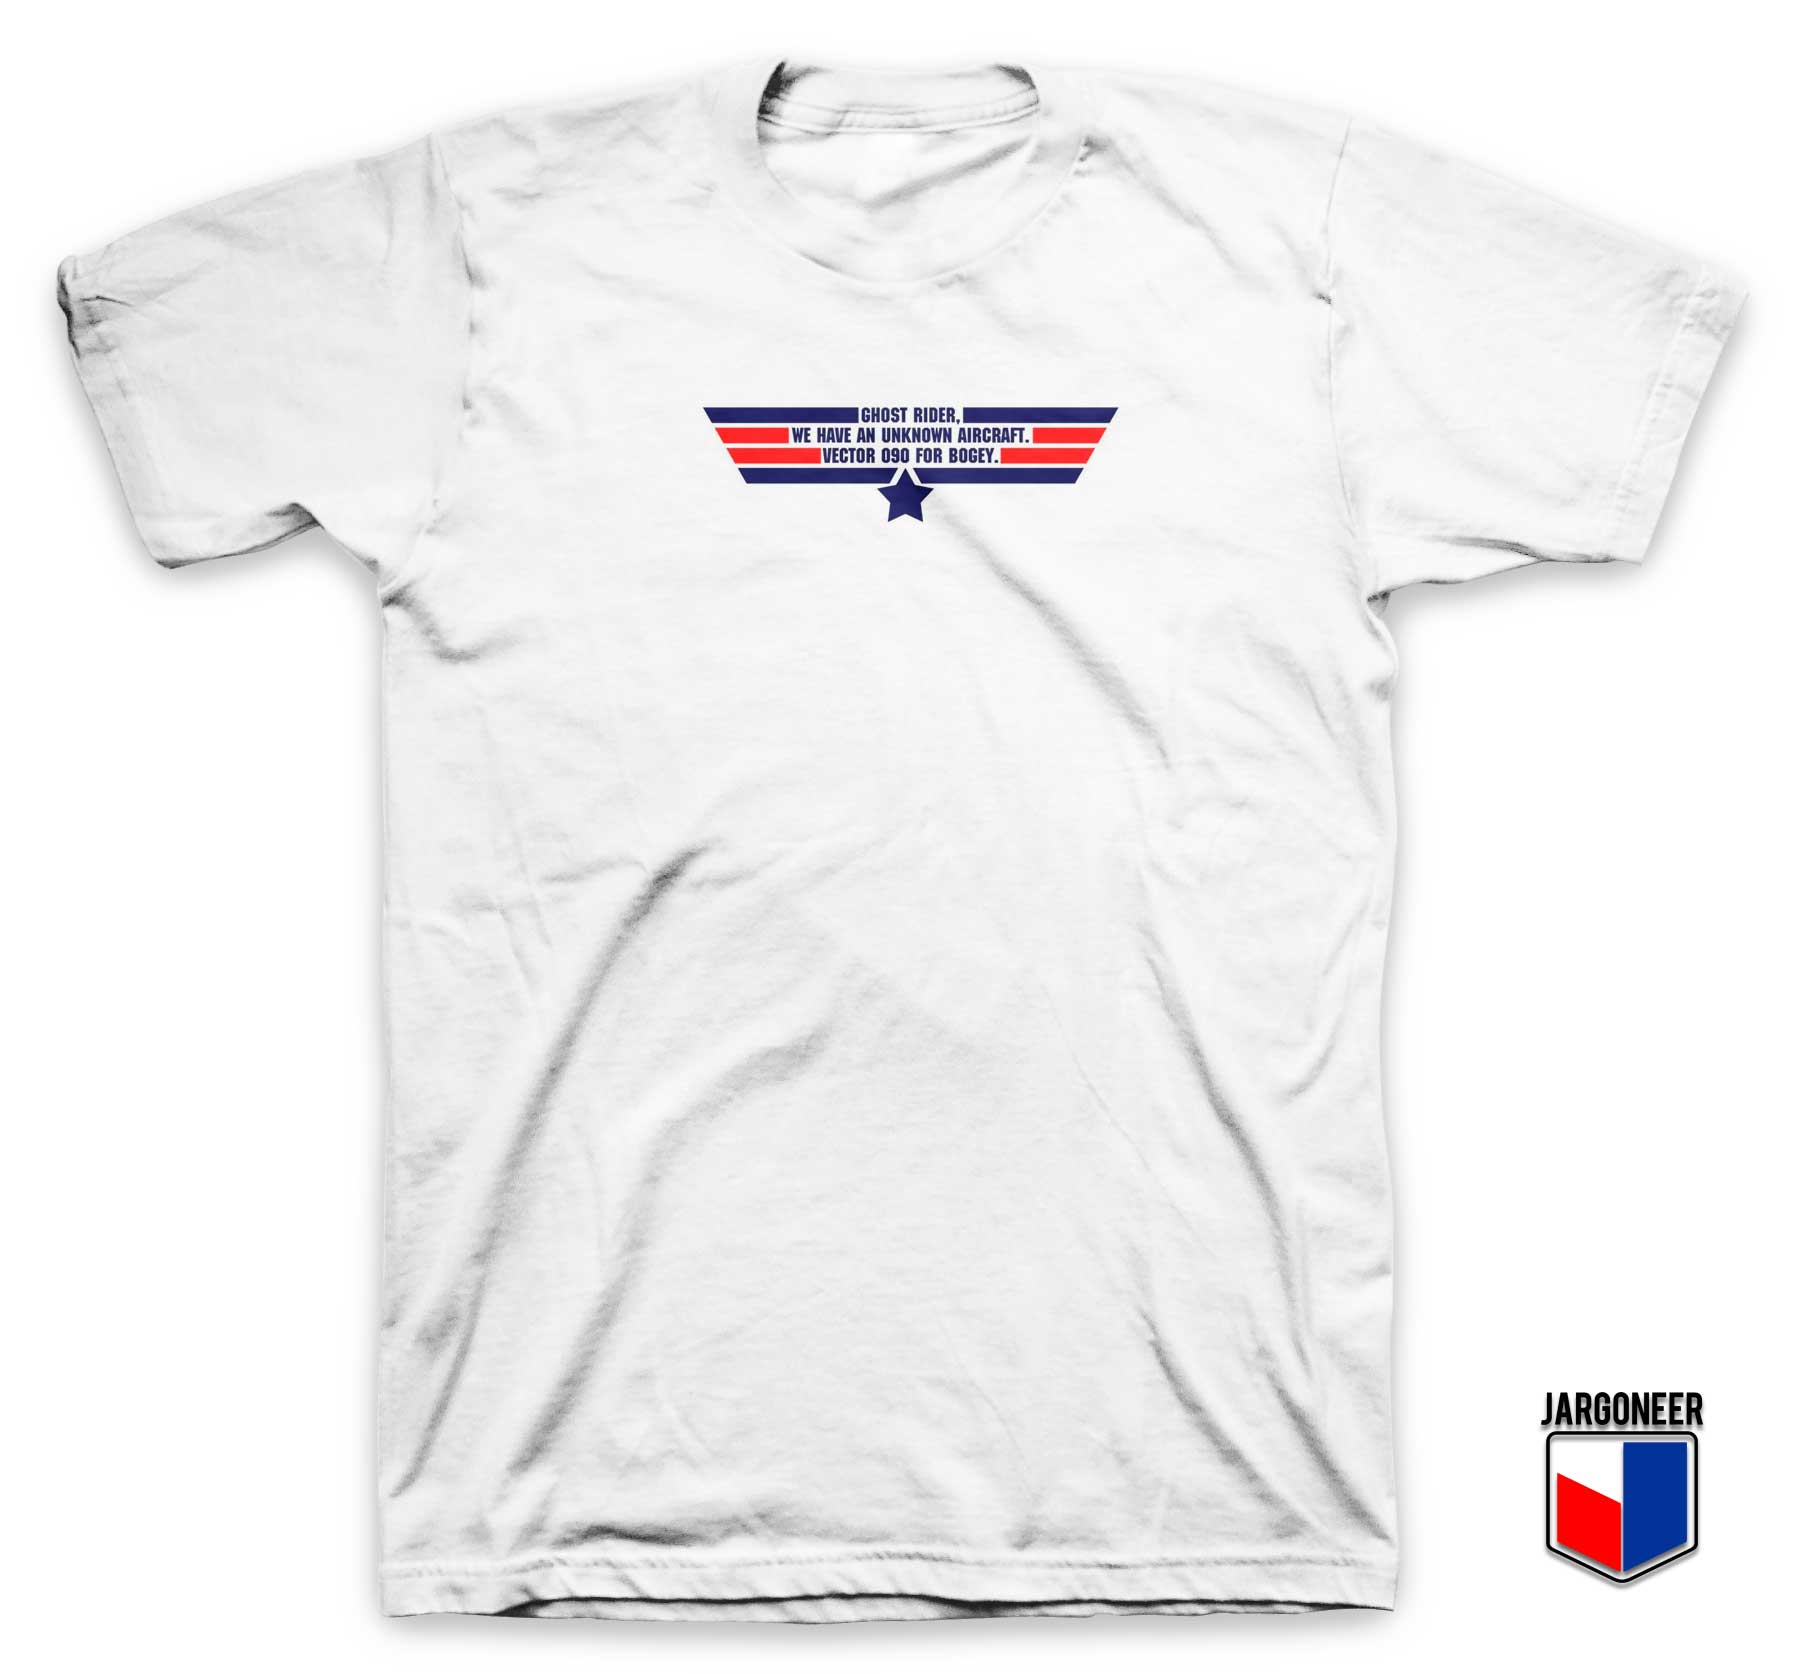 Top Gun Lines T Shirt - Shop Unique Graphic Cool Shirt Designs